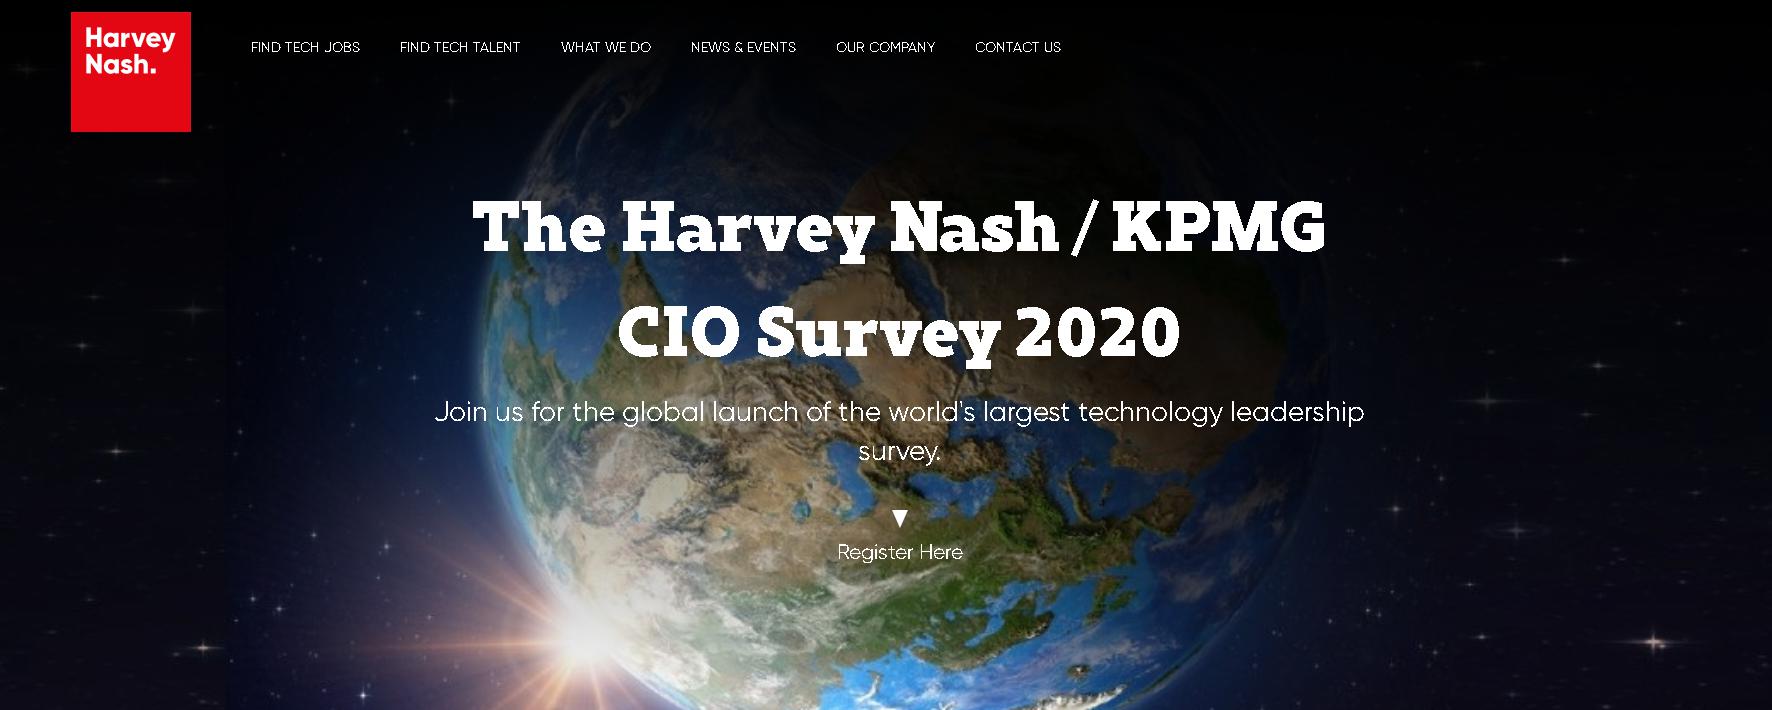 Công ty công nghệ phần mềm Harvey Nash